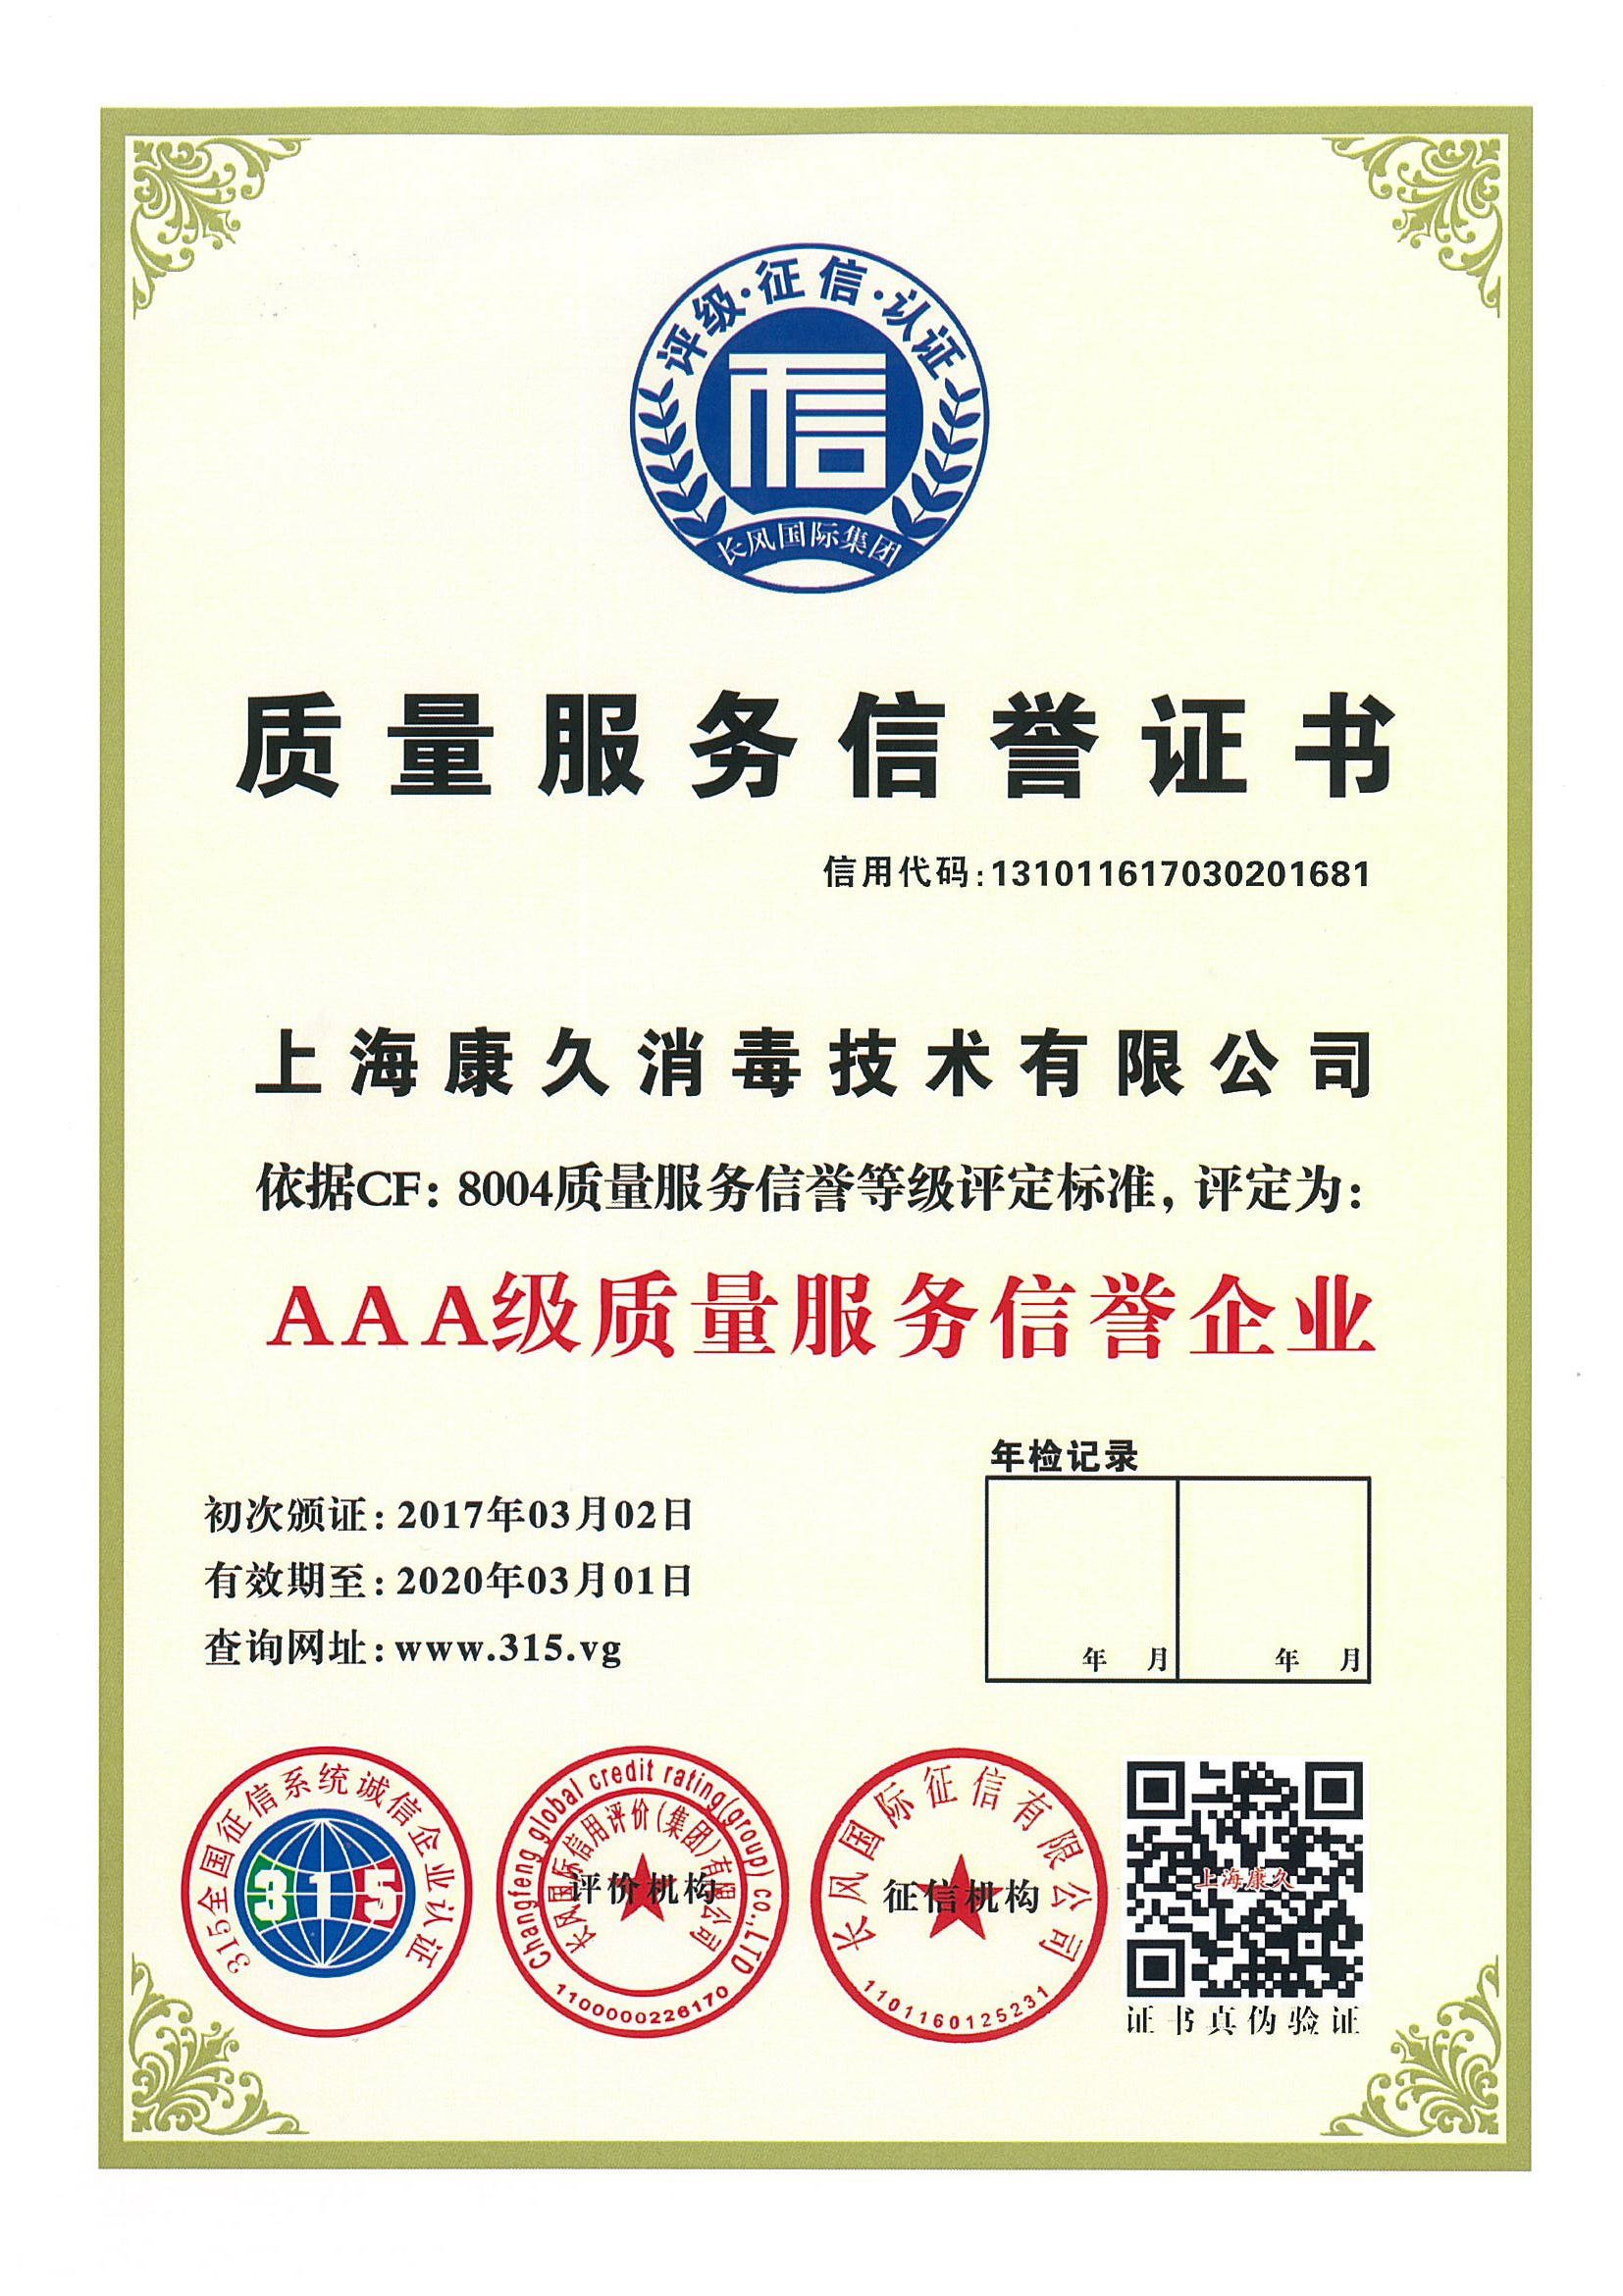 “锦州质量服务信誉证书